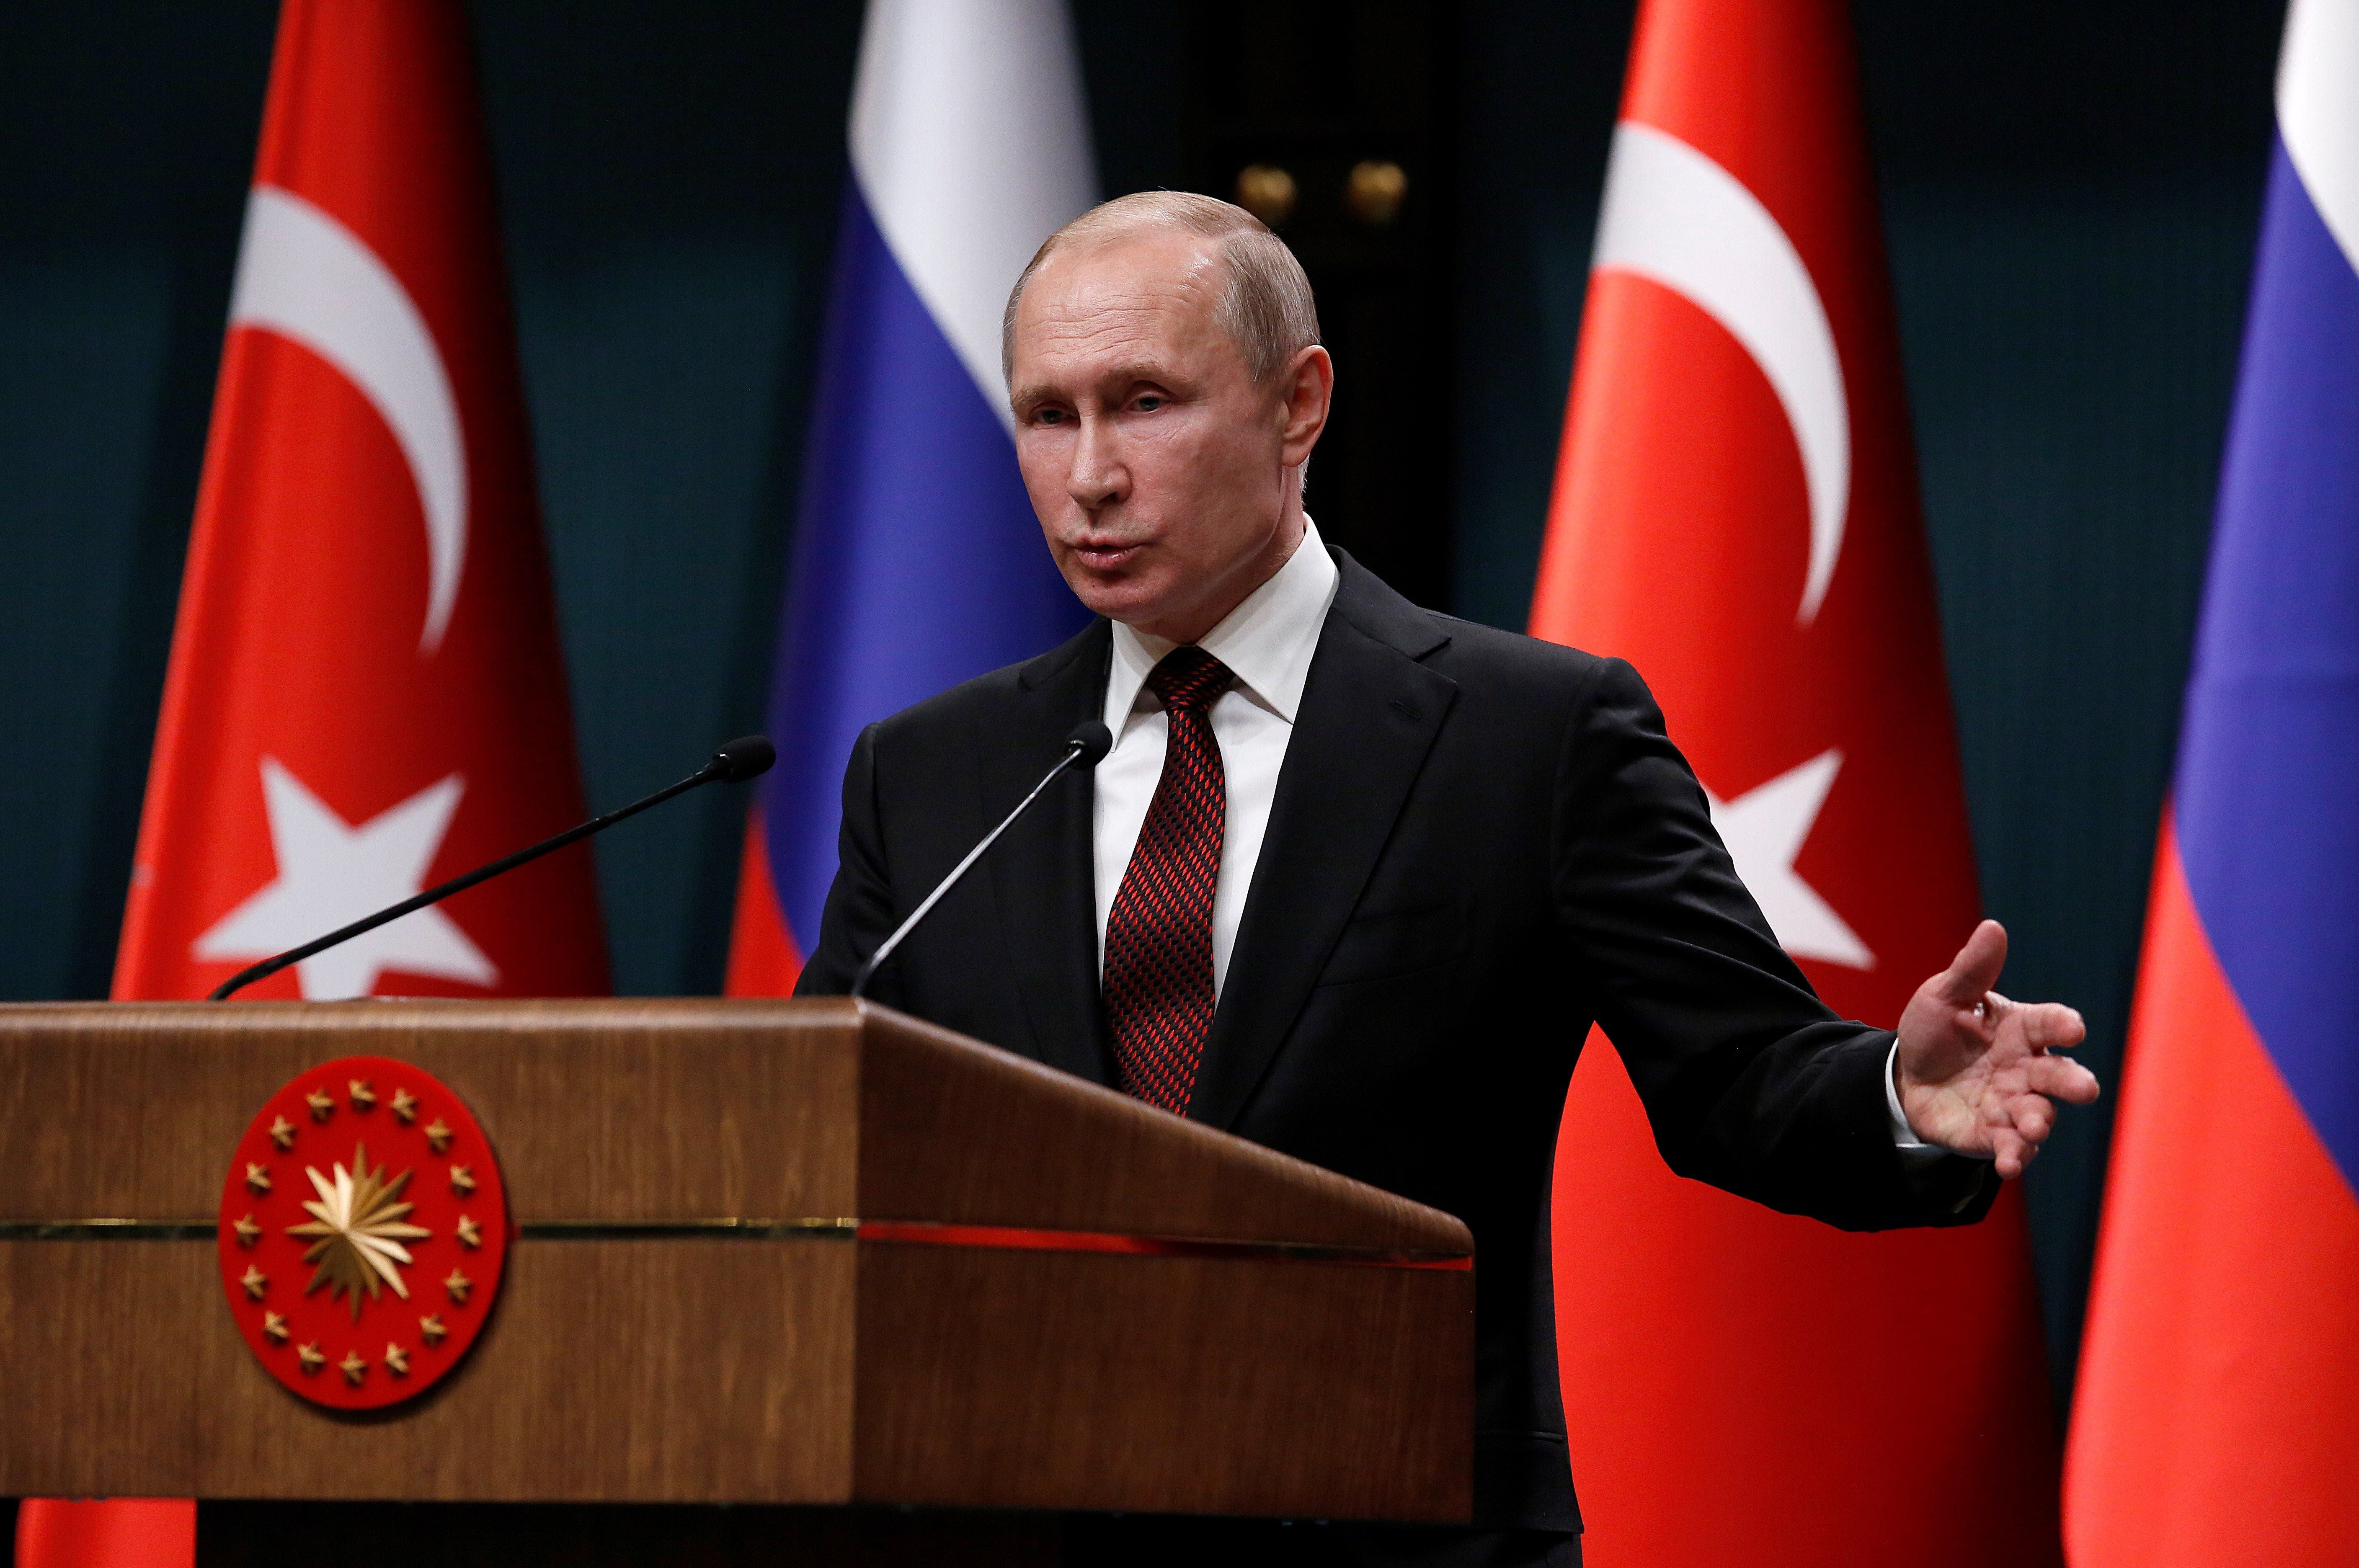 Vladimir Putin explicó que la velocidad con la que se esparció la campaña internacional contra Rusia desde Londres no tiene fundamentos.